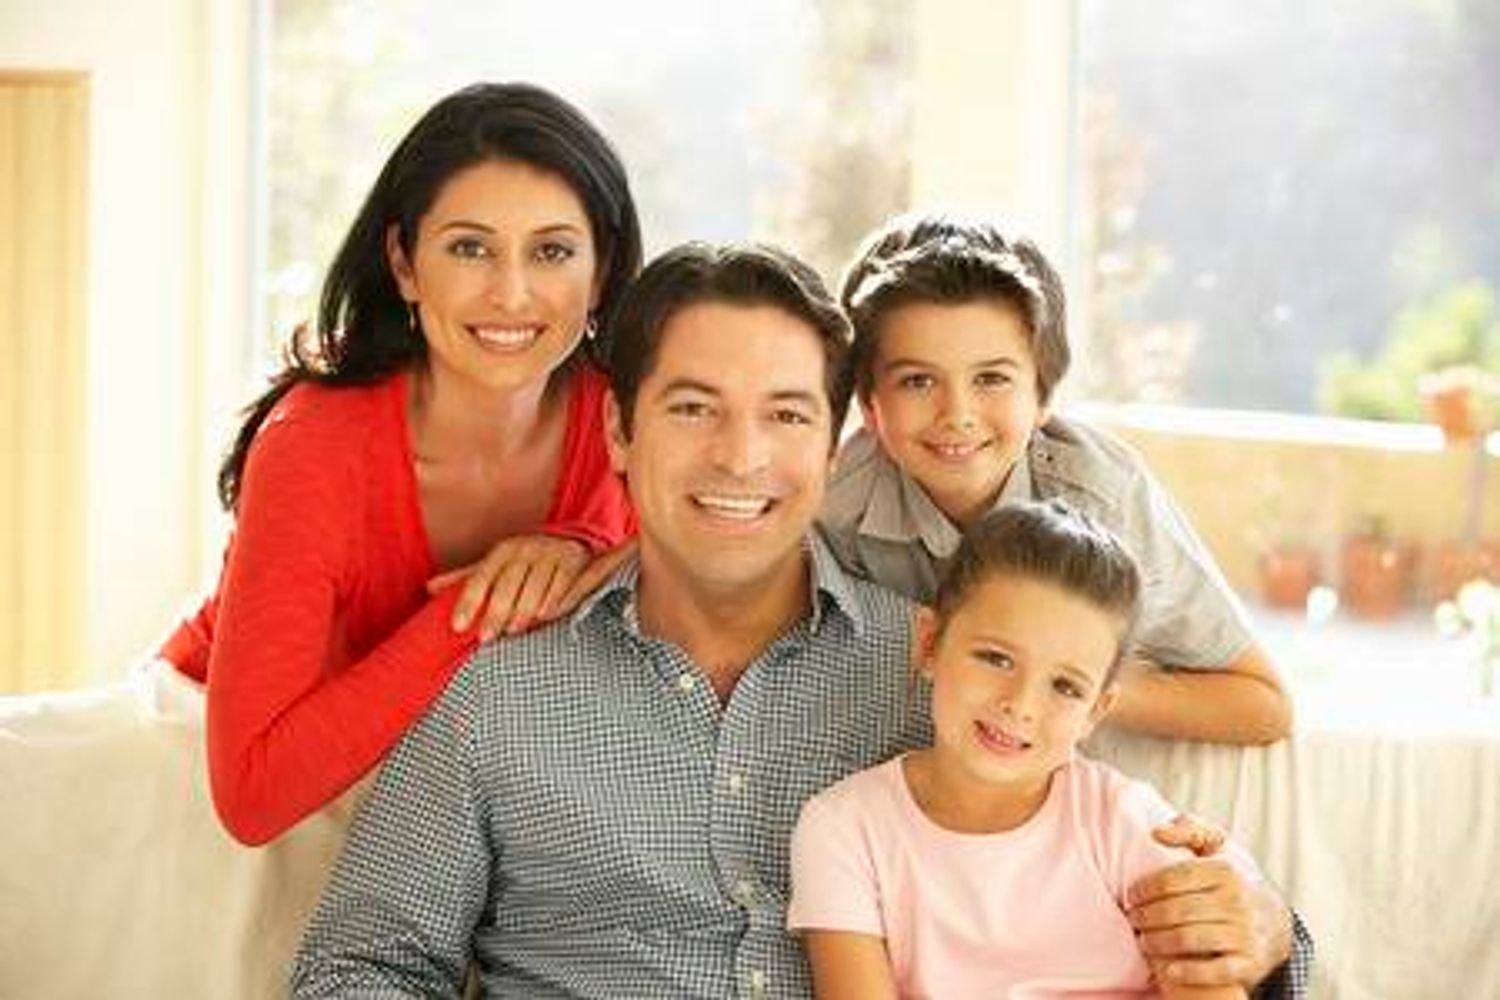 Familia feliz ahorrando con  su compañía  de la luz "Electricidad Barata Texas "